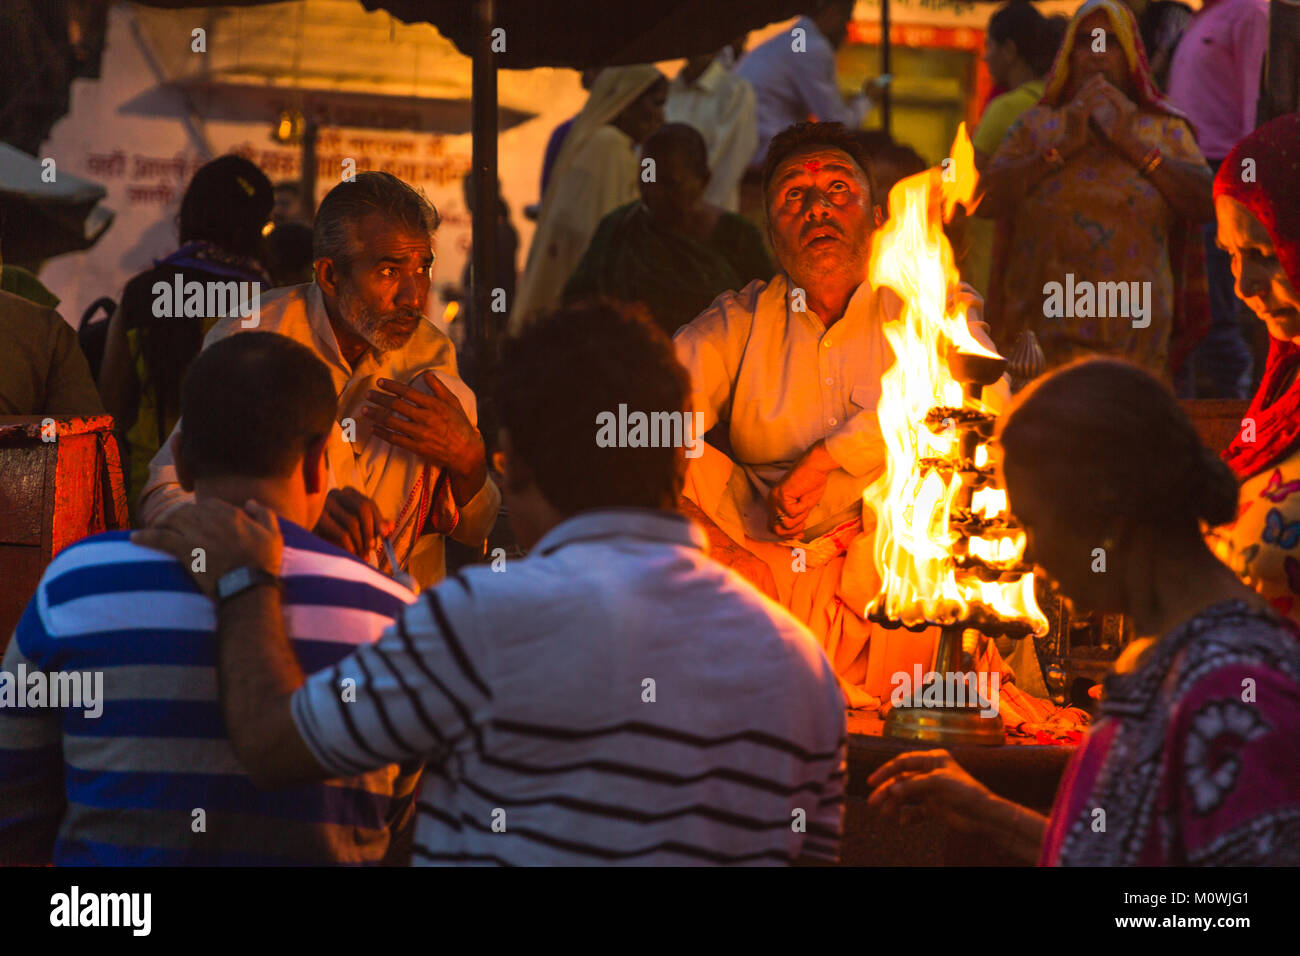 Haridwar, Uttarakhand - 17. August 2016: Hindu Menschen in der heiligen Stadt Haridwar in Uttarakhand, Indien während des Abends licht Zeremonie - Ganga aarthi Stockfoto